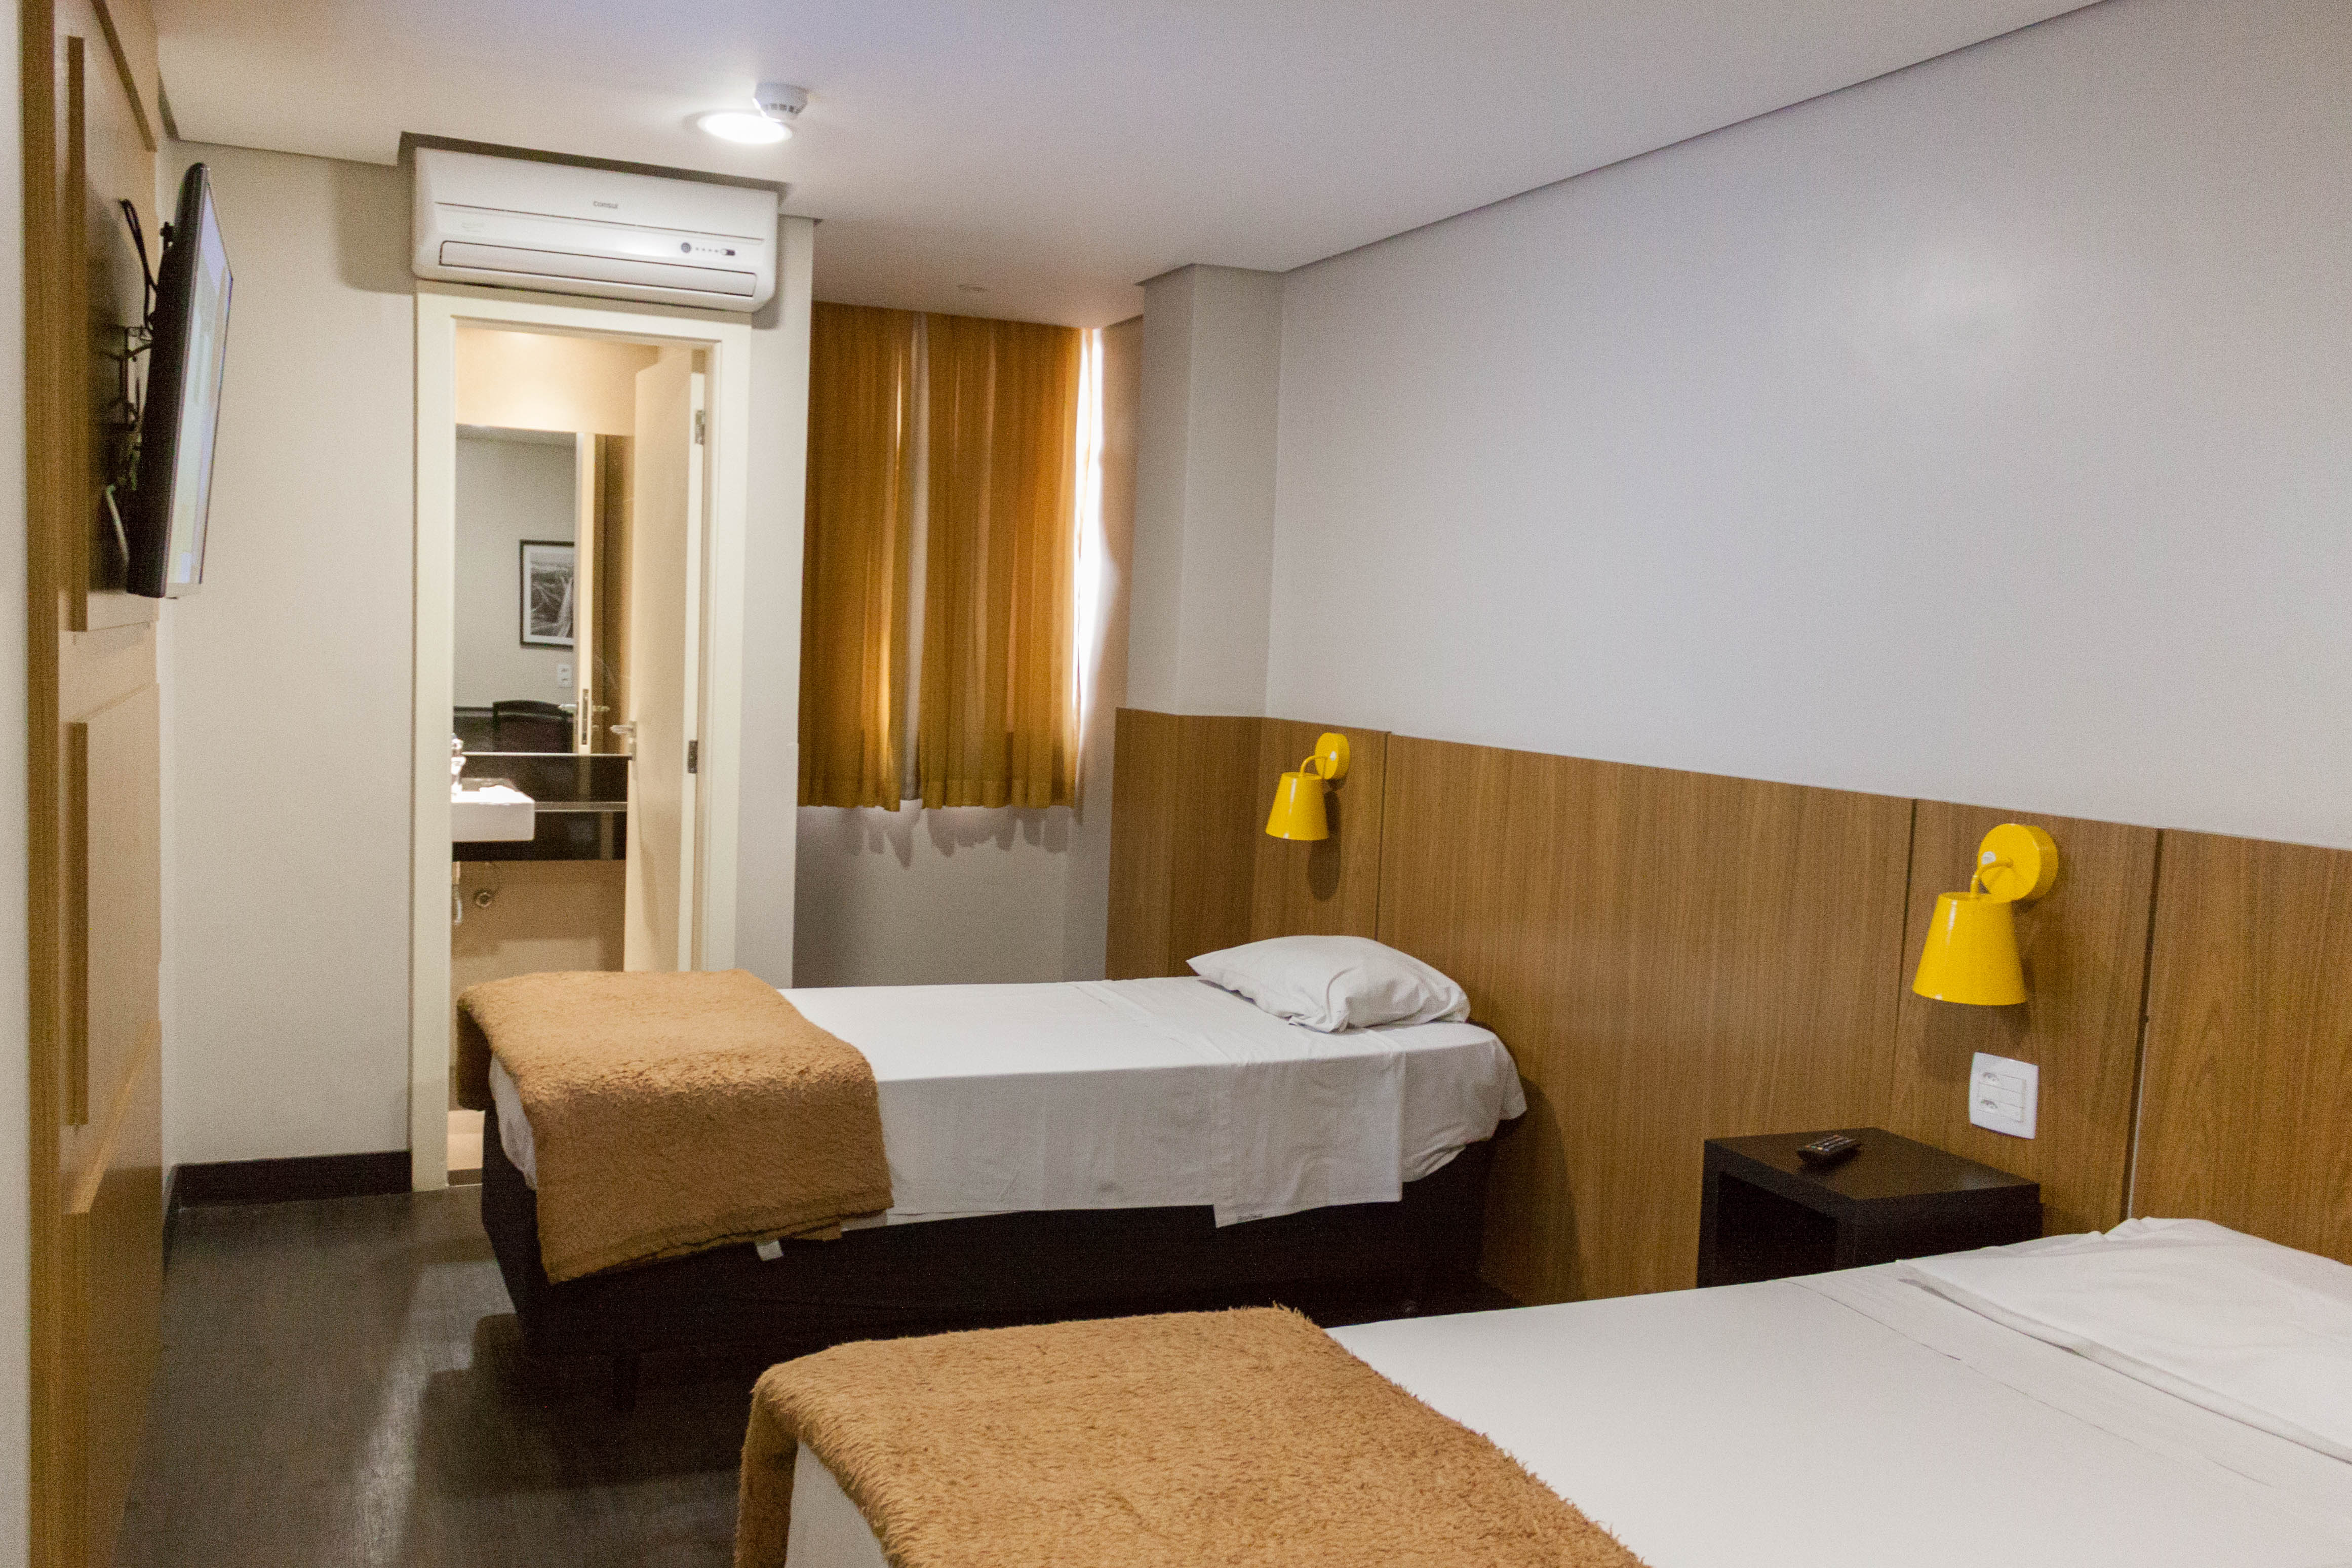 Um quarto com duas camas posicionadas em distância segura. Quadros da cidade de São Paulo e cores neutras compõem o ambiente que possui um banheiro, ar-condicionado e cortinas. 